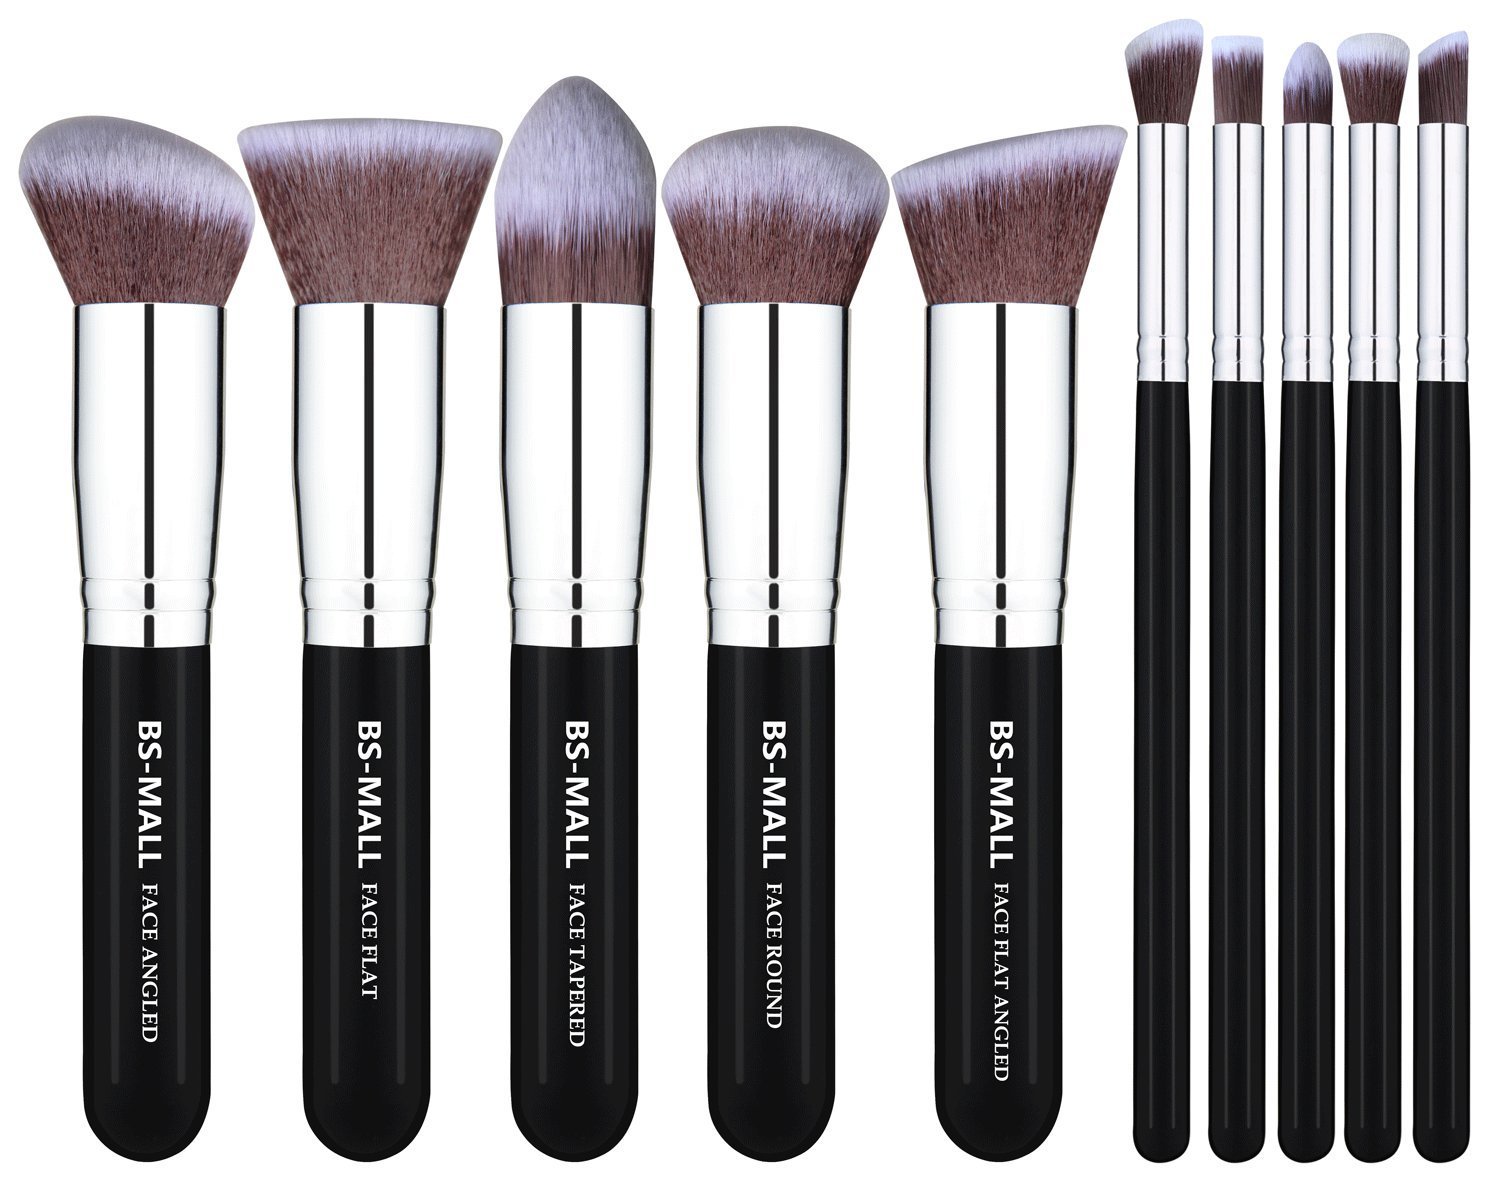 Kabuki Makeup Brush Set – 10 pieces – Just $10.99!